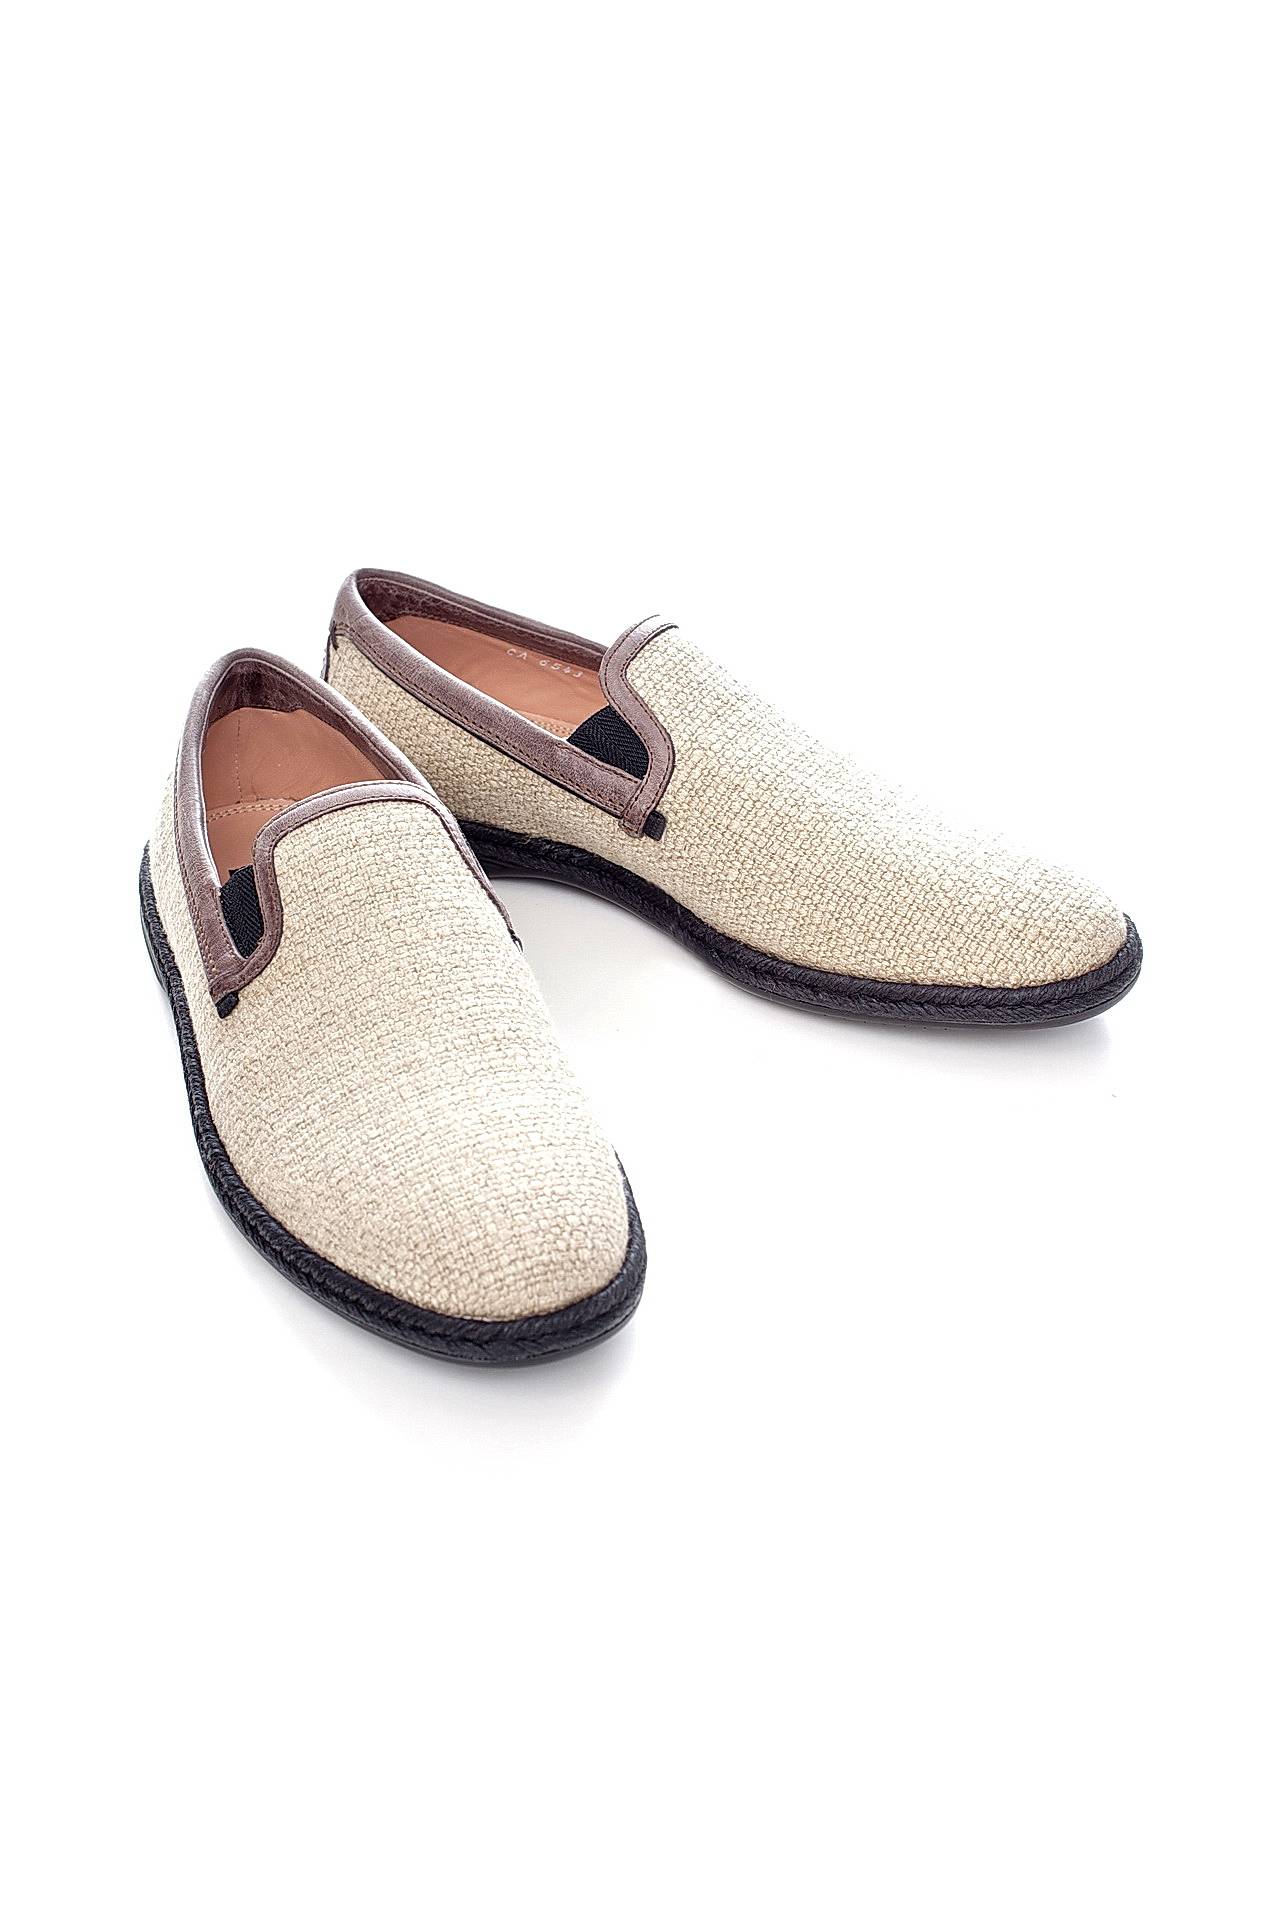 Обувь мужская Слиперы DOLCE & GABBANA (CA6543B9436/16.02). Купить за 23700 руб.